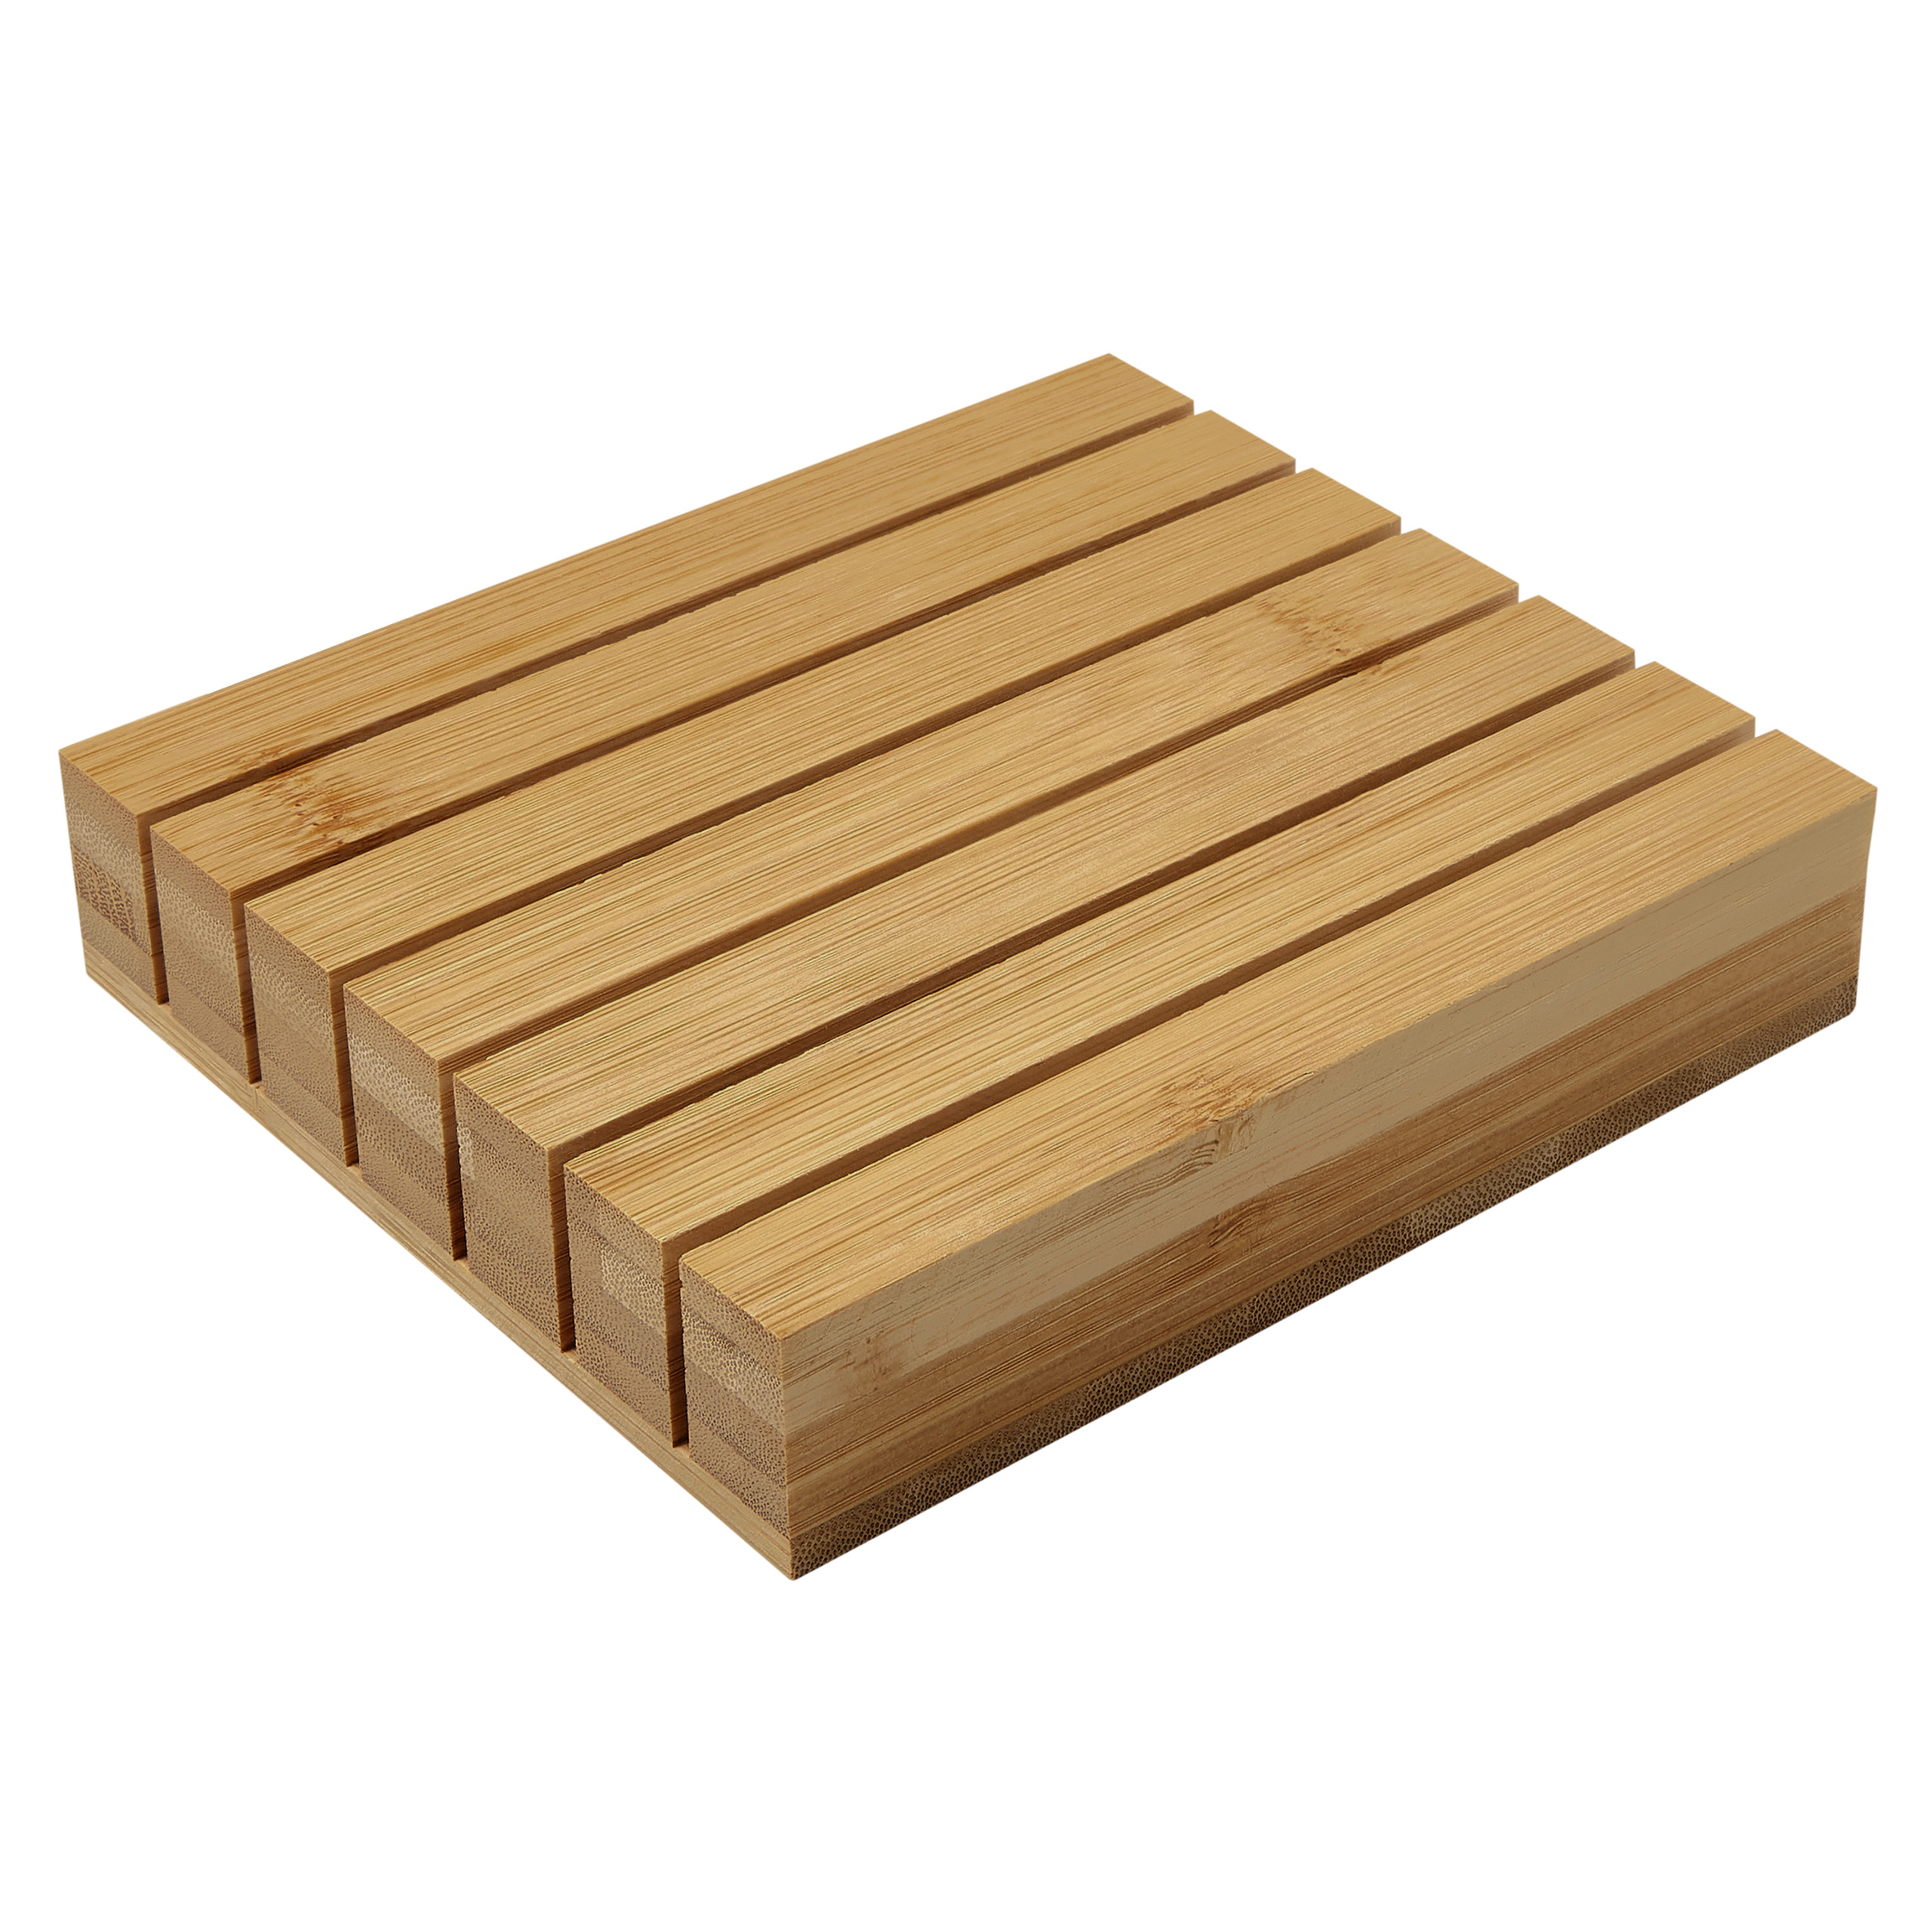 Bambus Besteckeinsatz ausziehbarer Schubladeneinsatz Besteckkasten Holz Einsatz